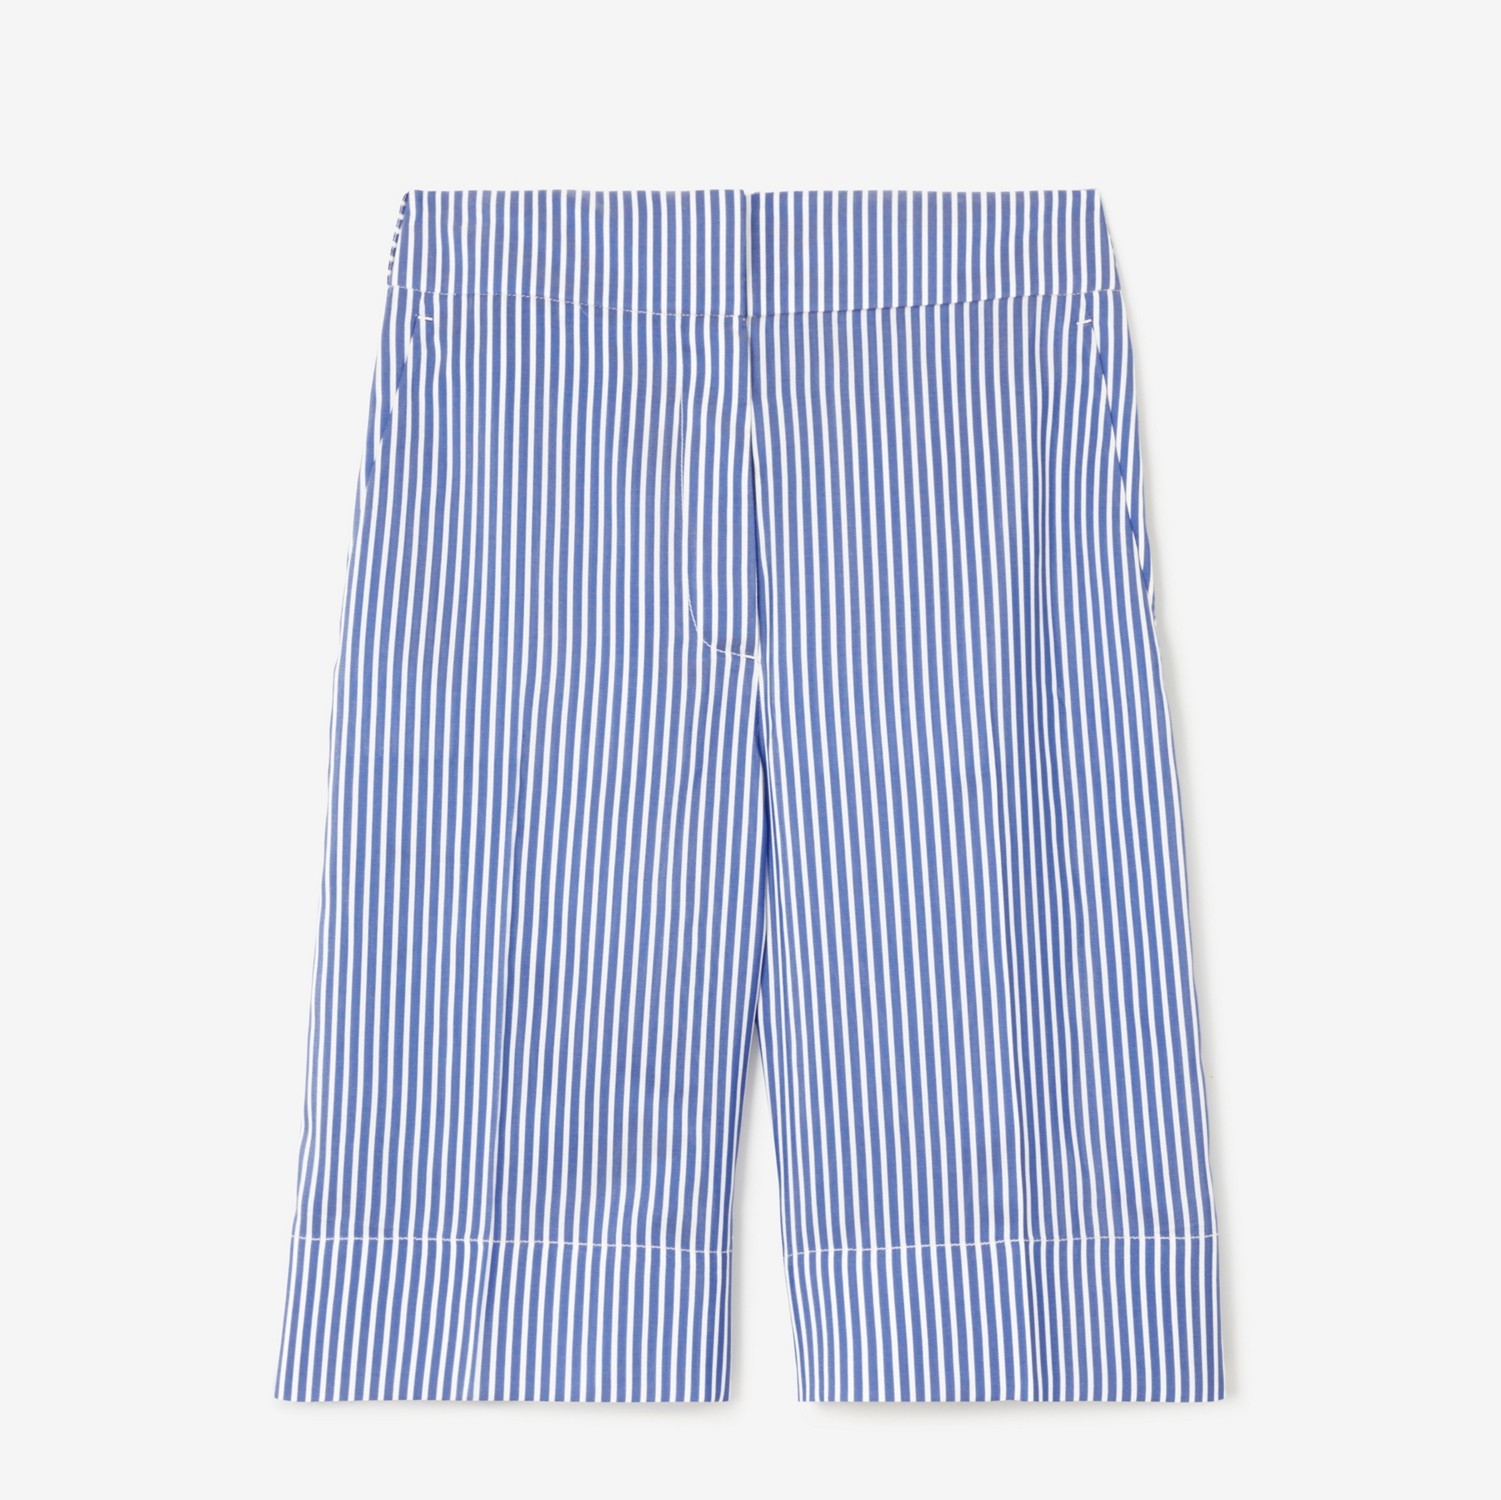 亚洲版型条纹丝质量裁短裤 (蓝色 / 白色条纹) - 女士 | Burberry® 博柏利官网